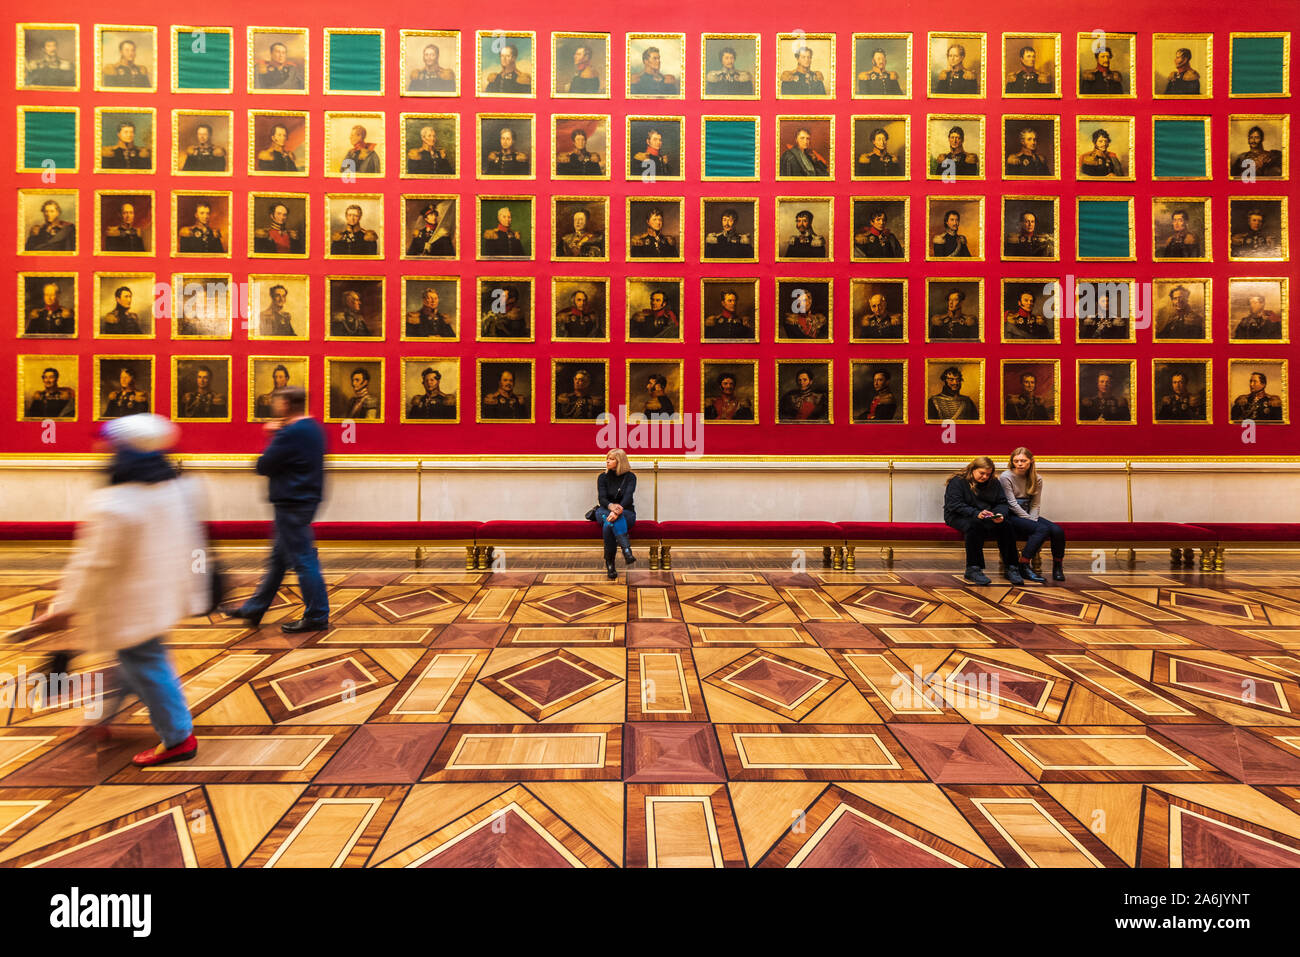 La galería de retratos de los Héroes de la guerra de 1812 en el Museo Estatal del Hermitage, en San Petersburgo, Rusia Foto de stock